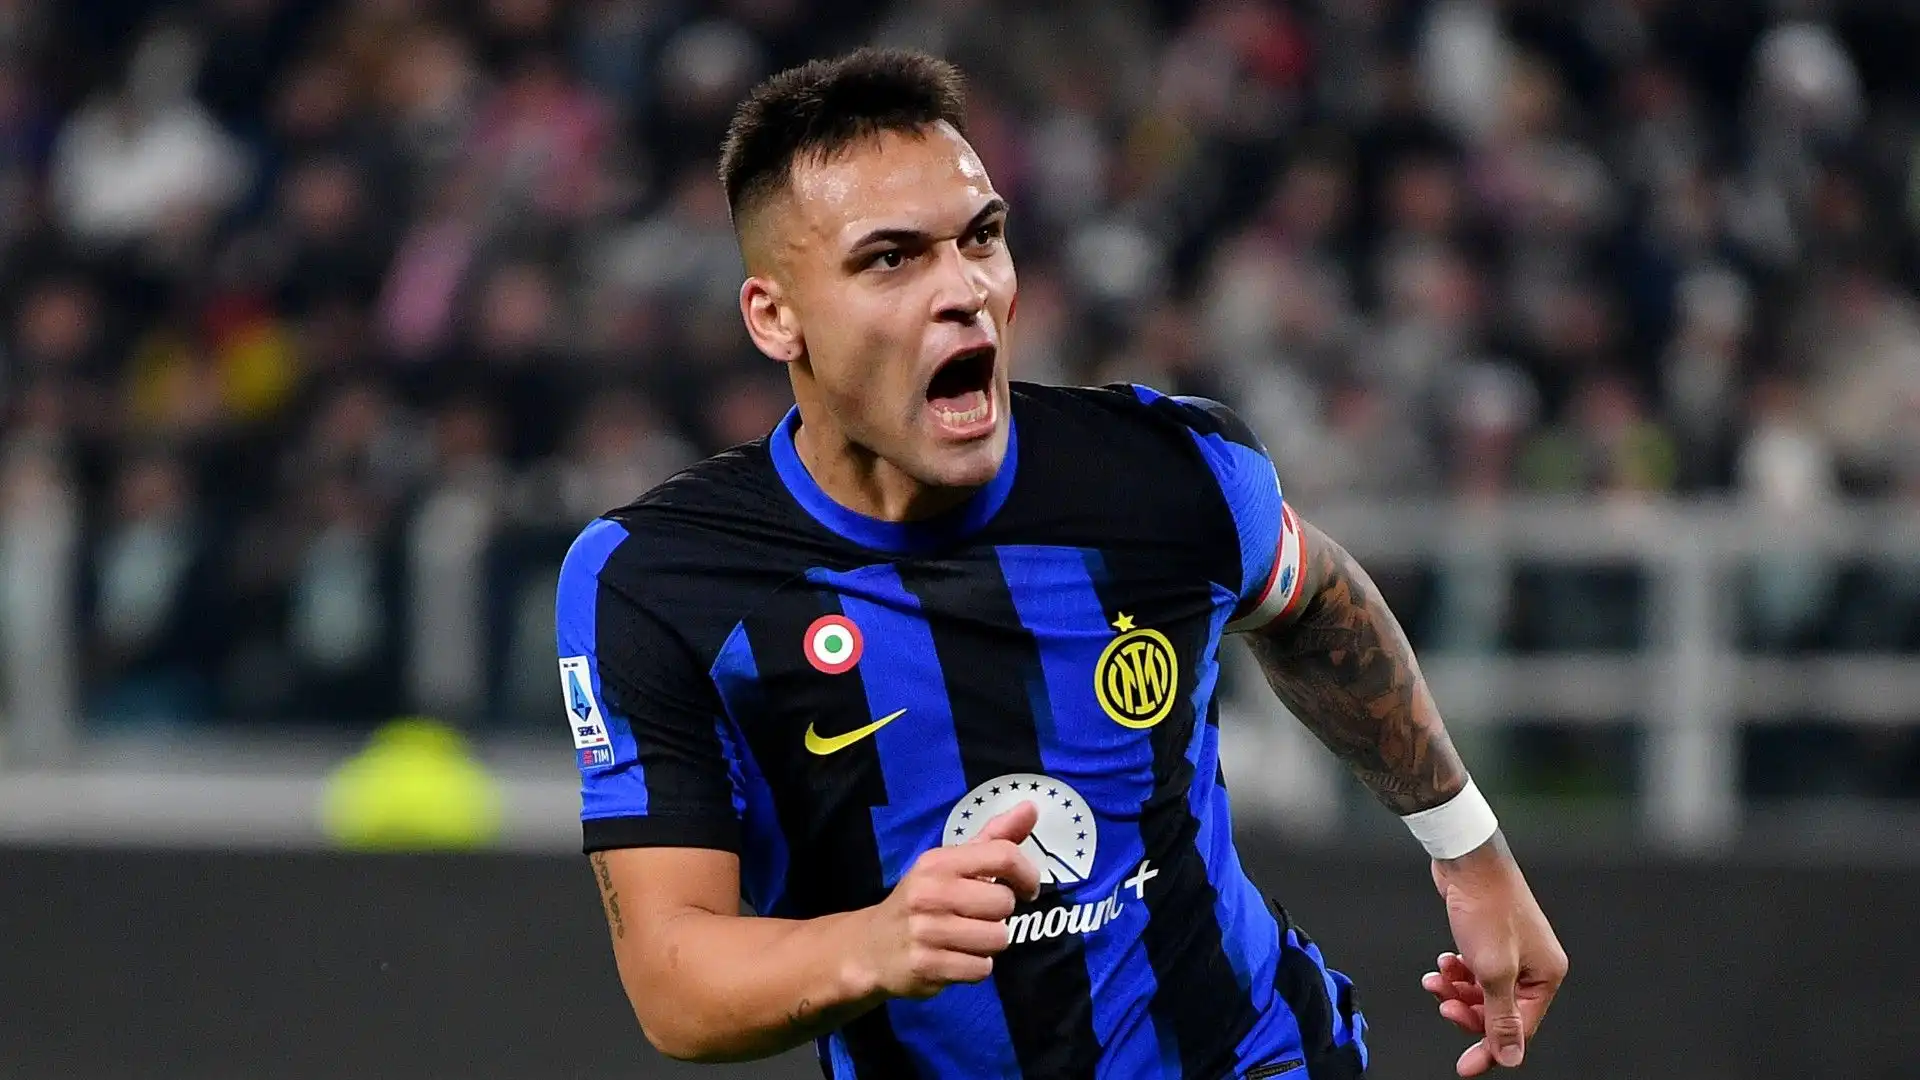 2- Lautaro Martinez, capitano e anima dell'Inter, ha un valore di 110 milioni di euro